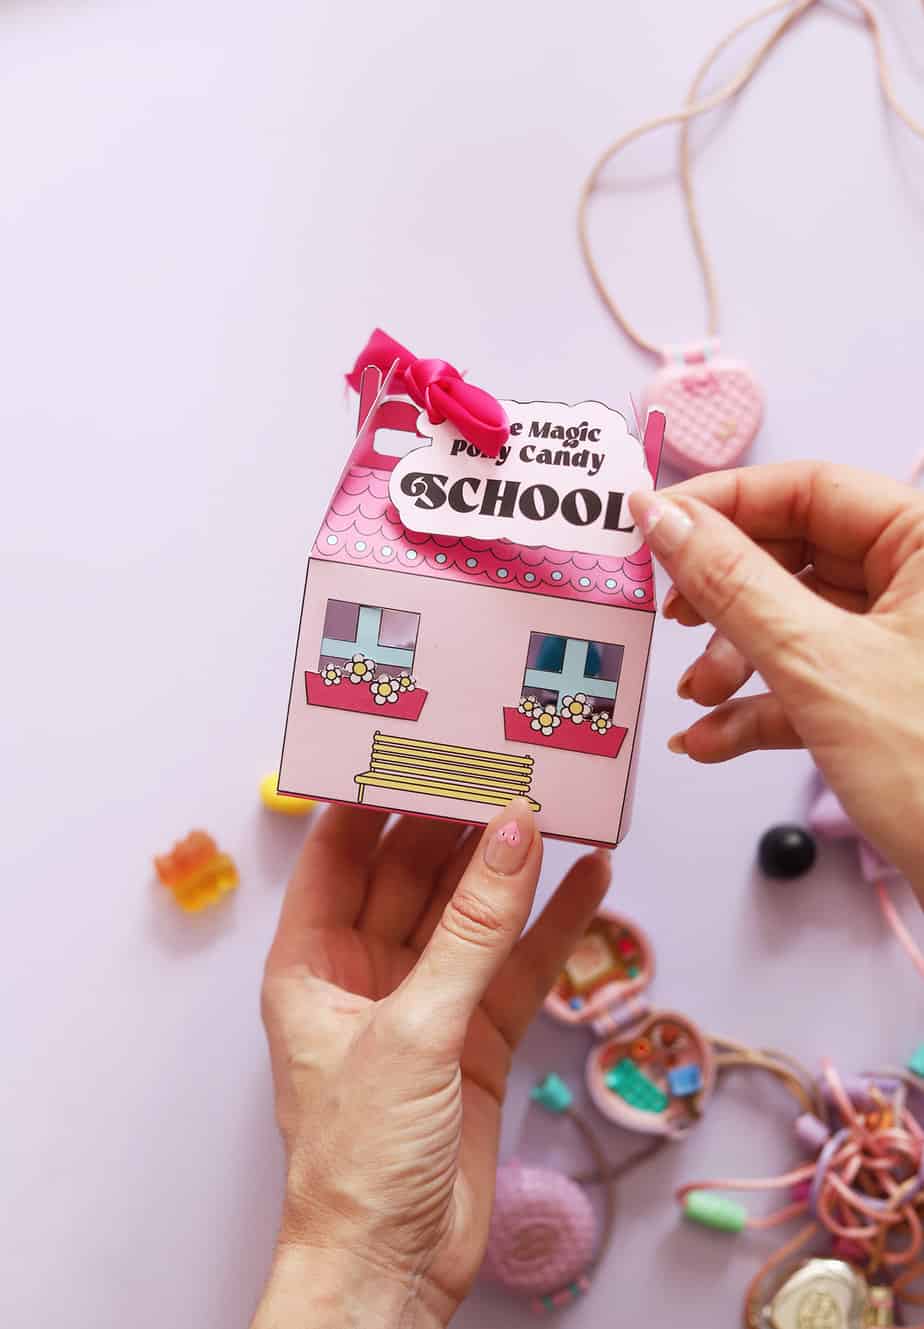 DIY : cadeau de fin d’année avec la maison à bonbon version Polly Candy School !